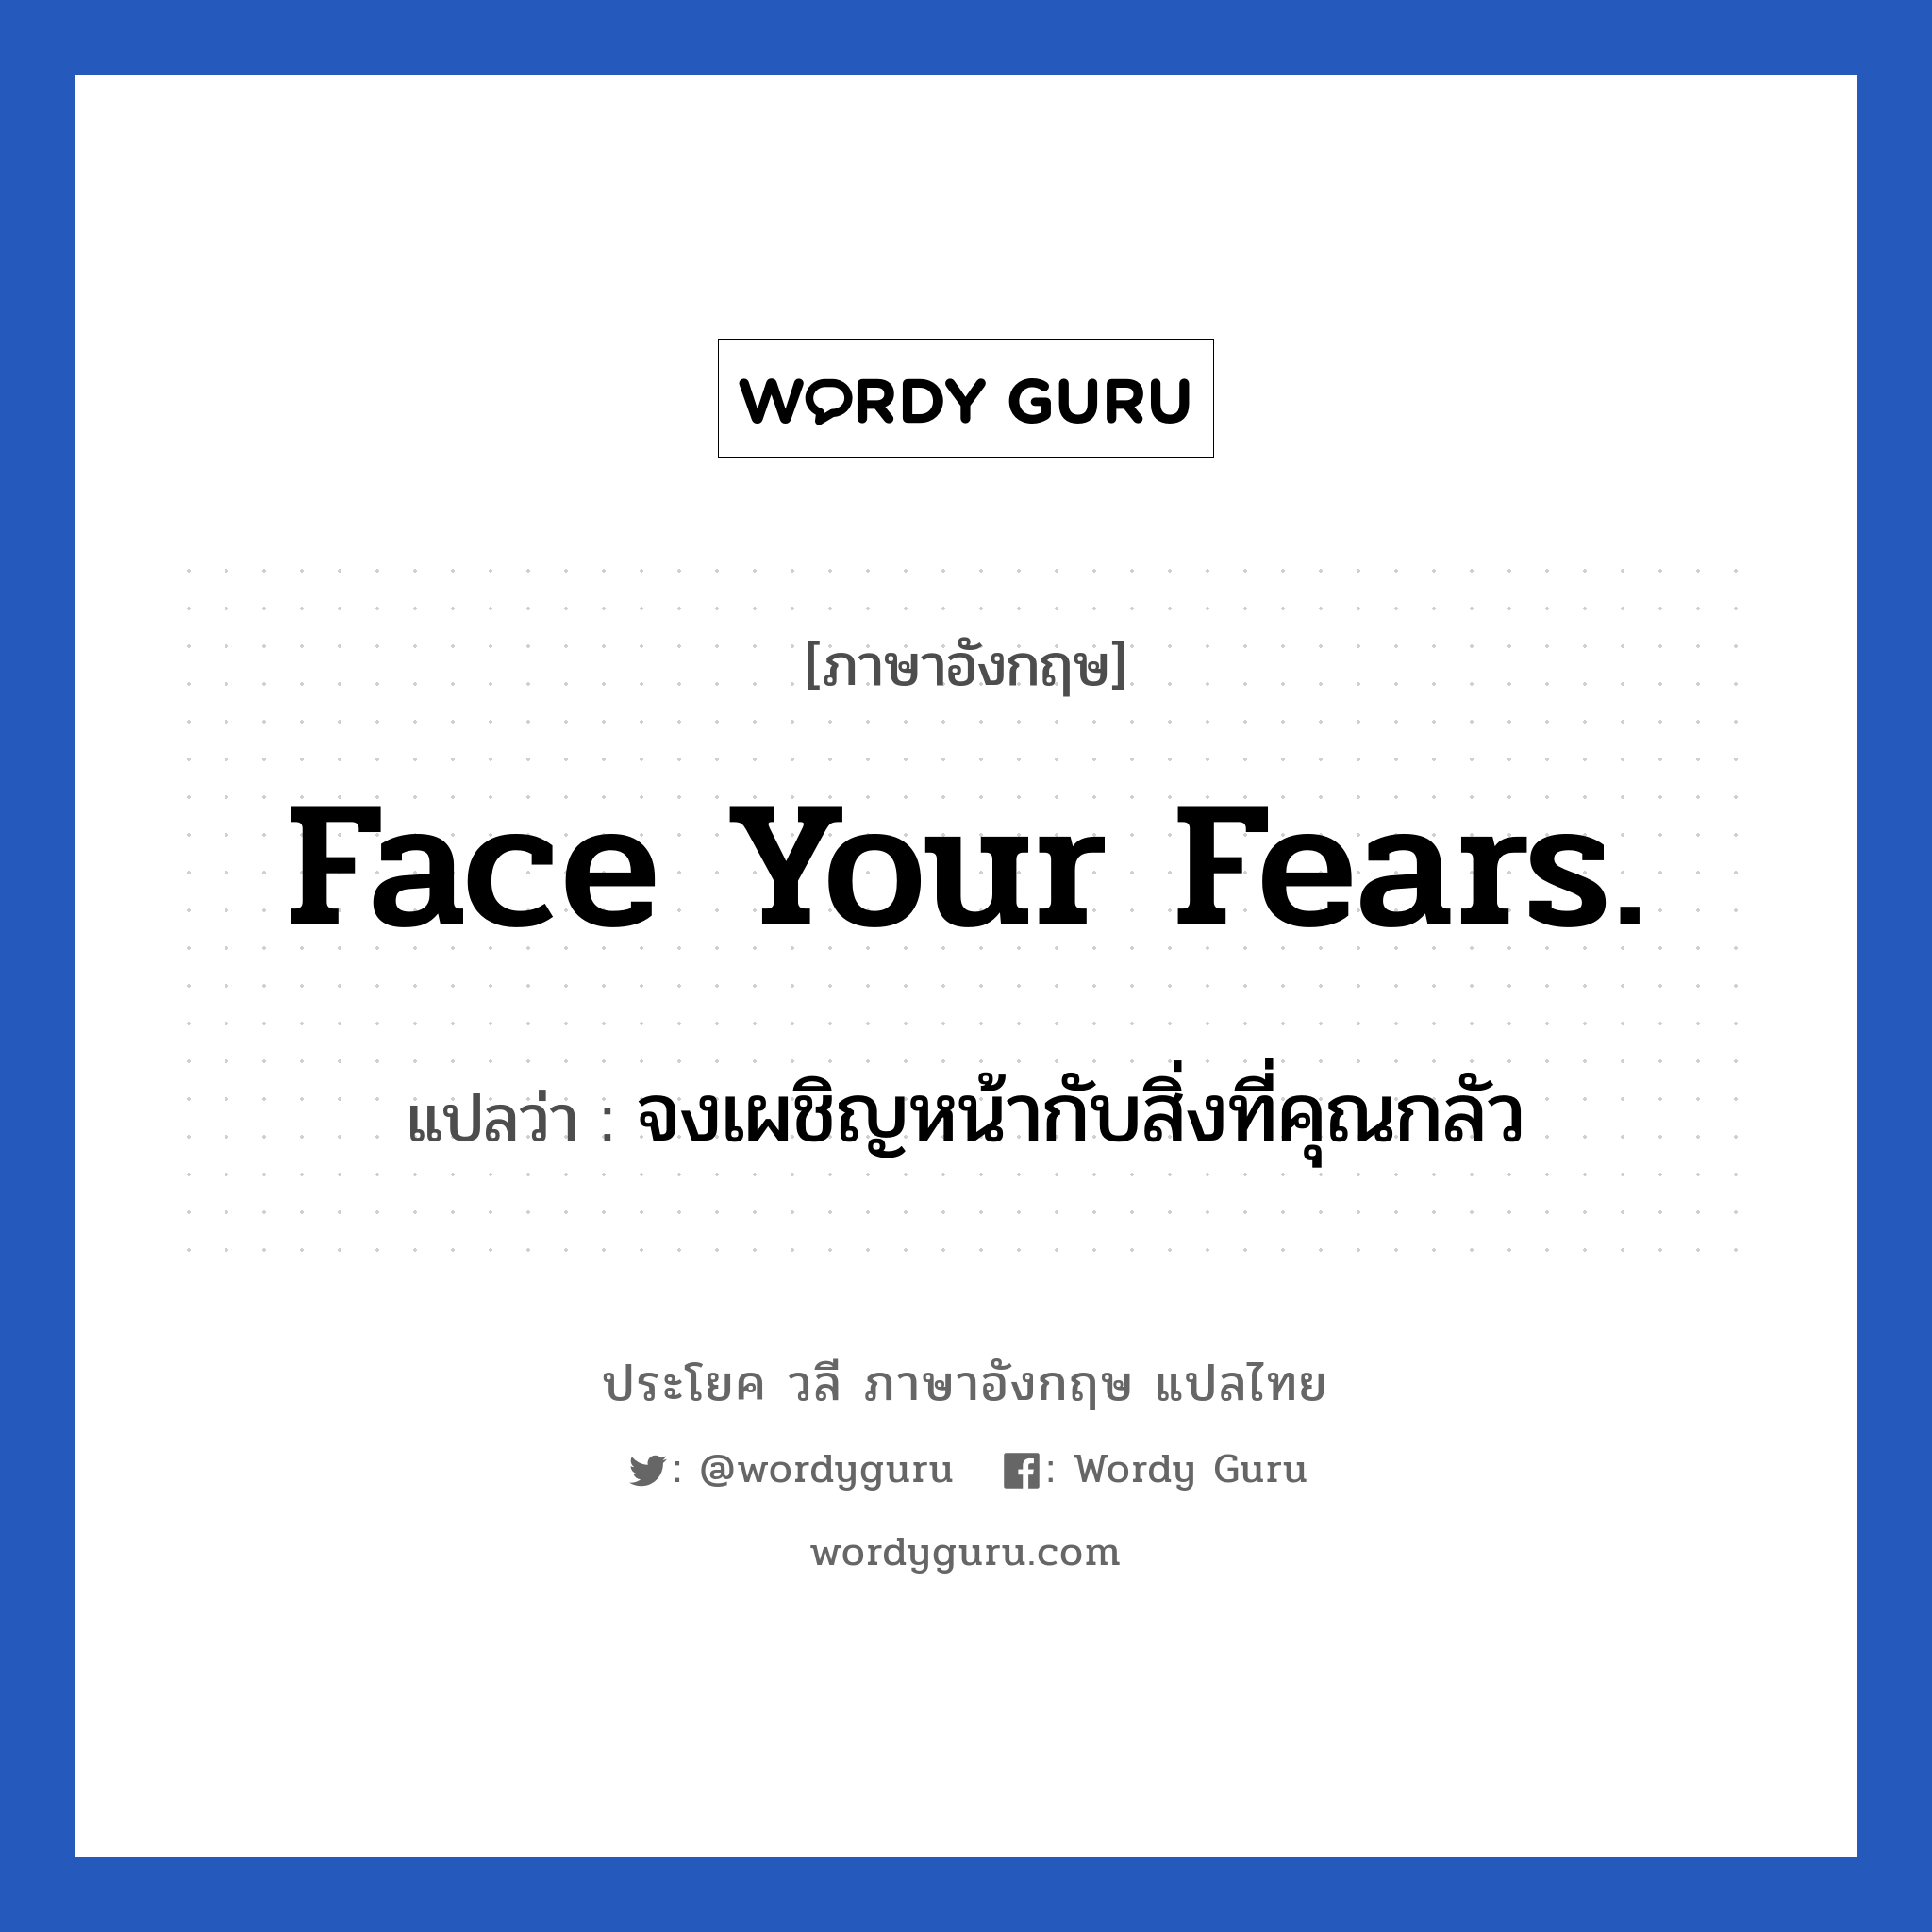 จงเผชิญหน้ากับสิ่งที่คุณกลัว ภาษาอังกฤษ?, วลีภาษาอังกฤษ จงเผชิญหน้ากับสิ่งที่คุณกลัว แปลว่า Face your fears.